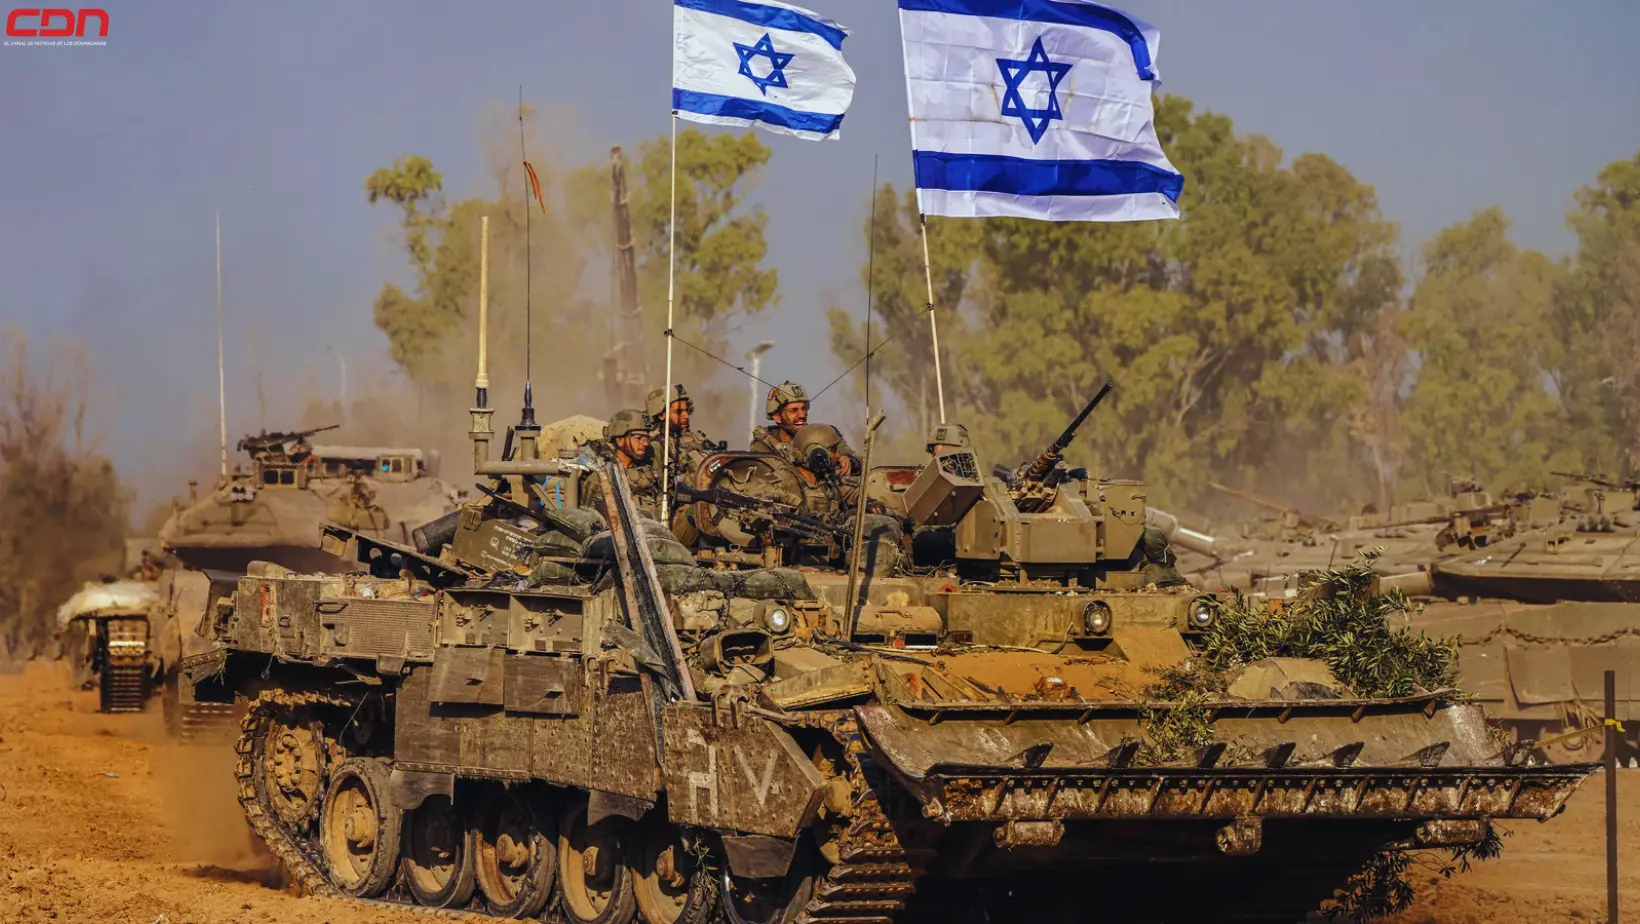 Vehículos y miembros del Ejército israelí. Foto: Fuente externa